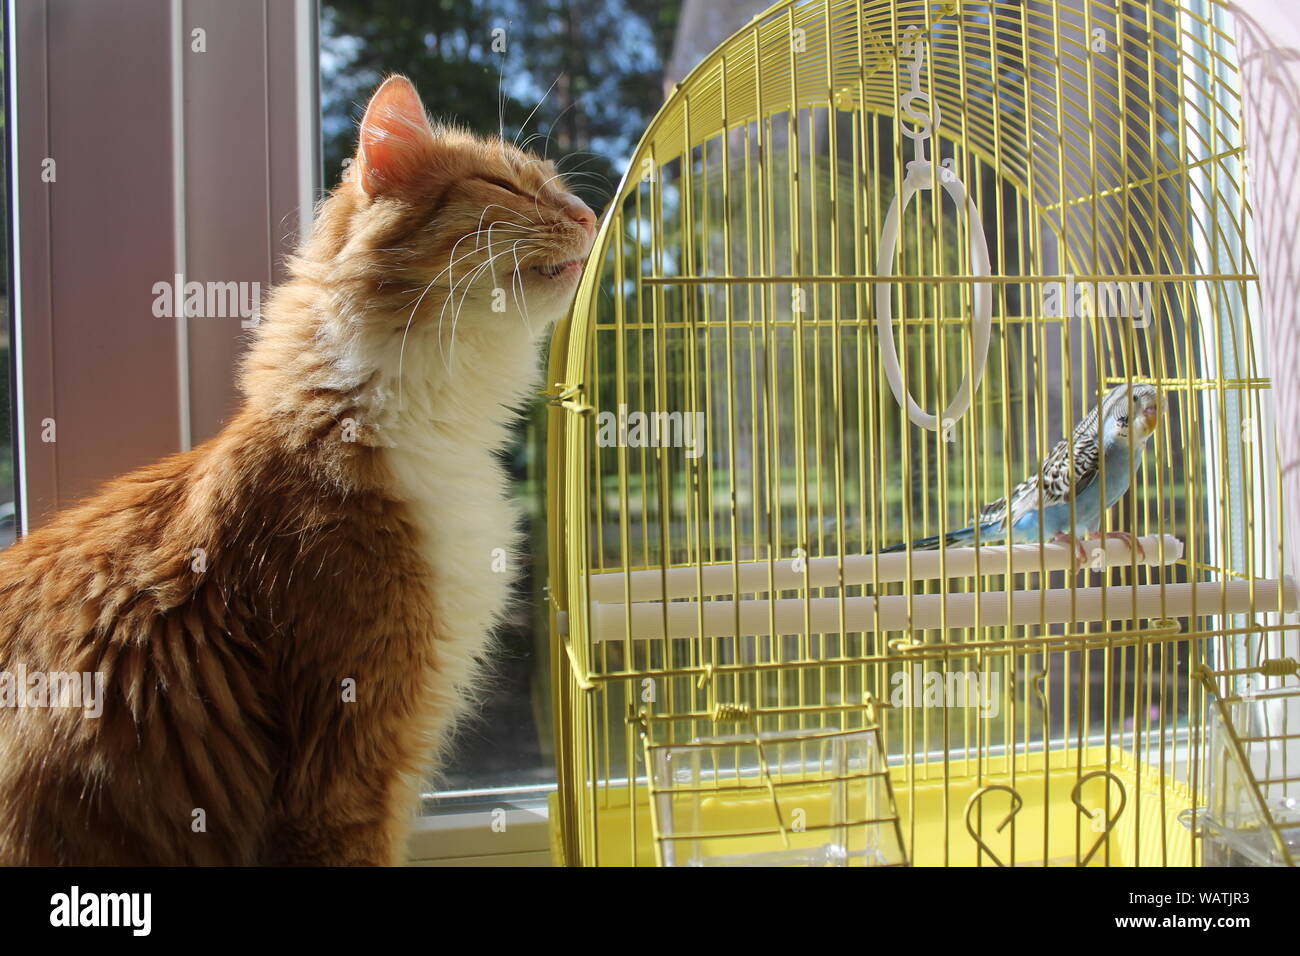 Couleur orange fluffy cat s'asseoir près de Blue Parrot essayez d'attraper Banque D'Images